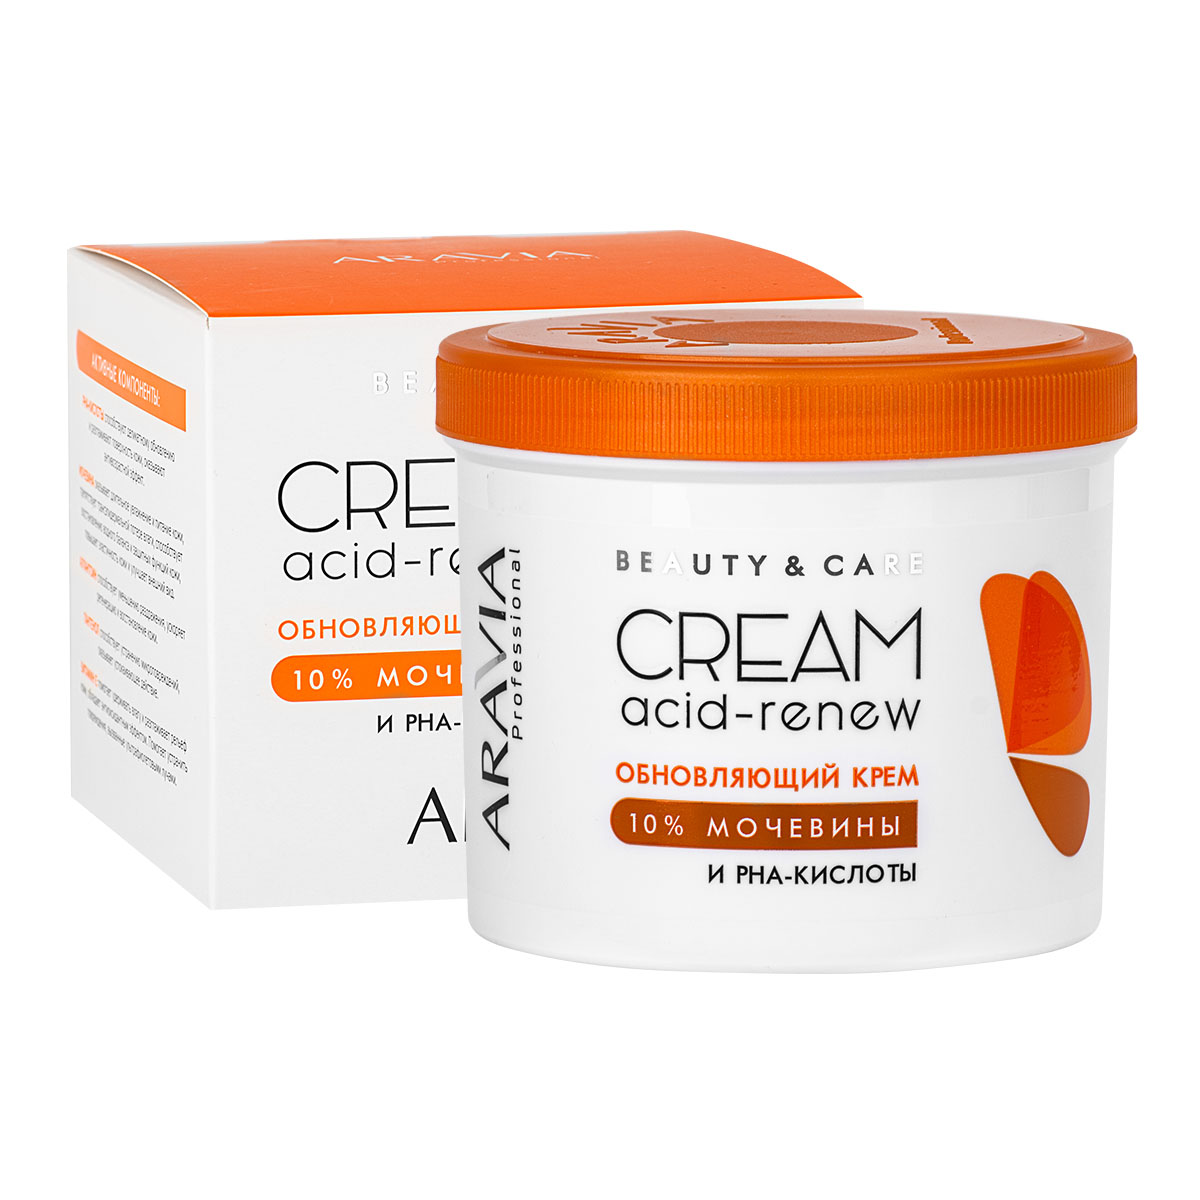 Aravia Professional Обновляющий крем с PHA-кислотами и мочевиной (10%) Acid-Renew Cream, 550 мл (Aravia Professional, SPA маникюр) цена и фото